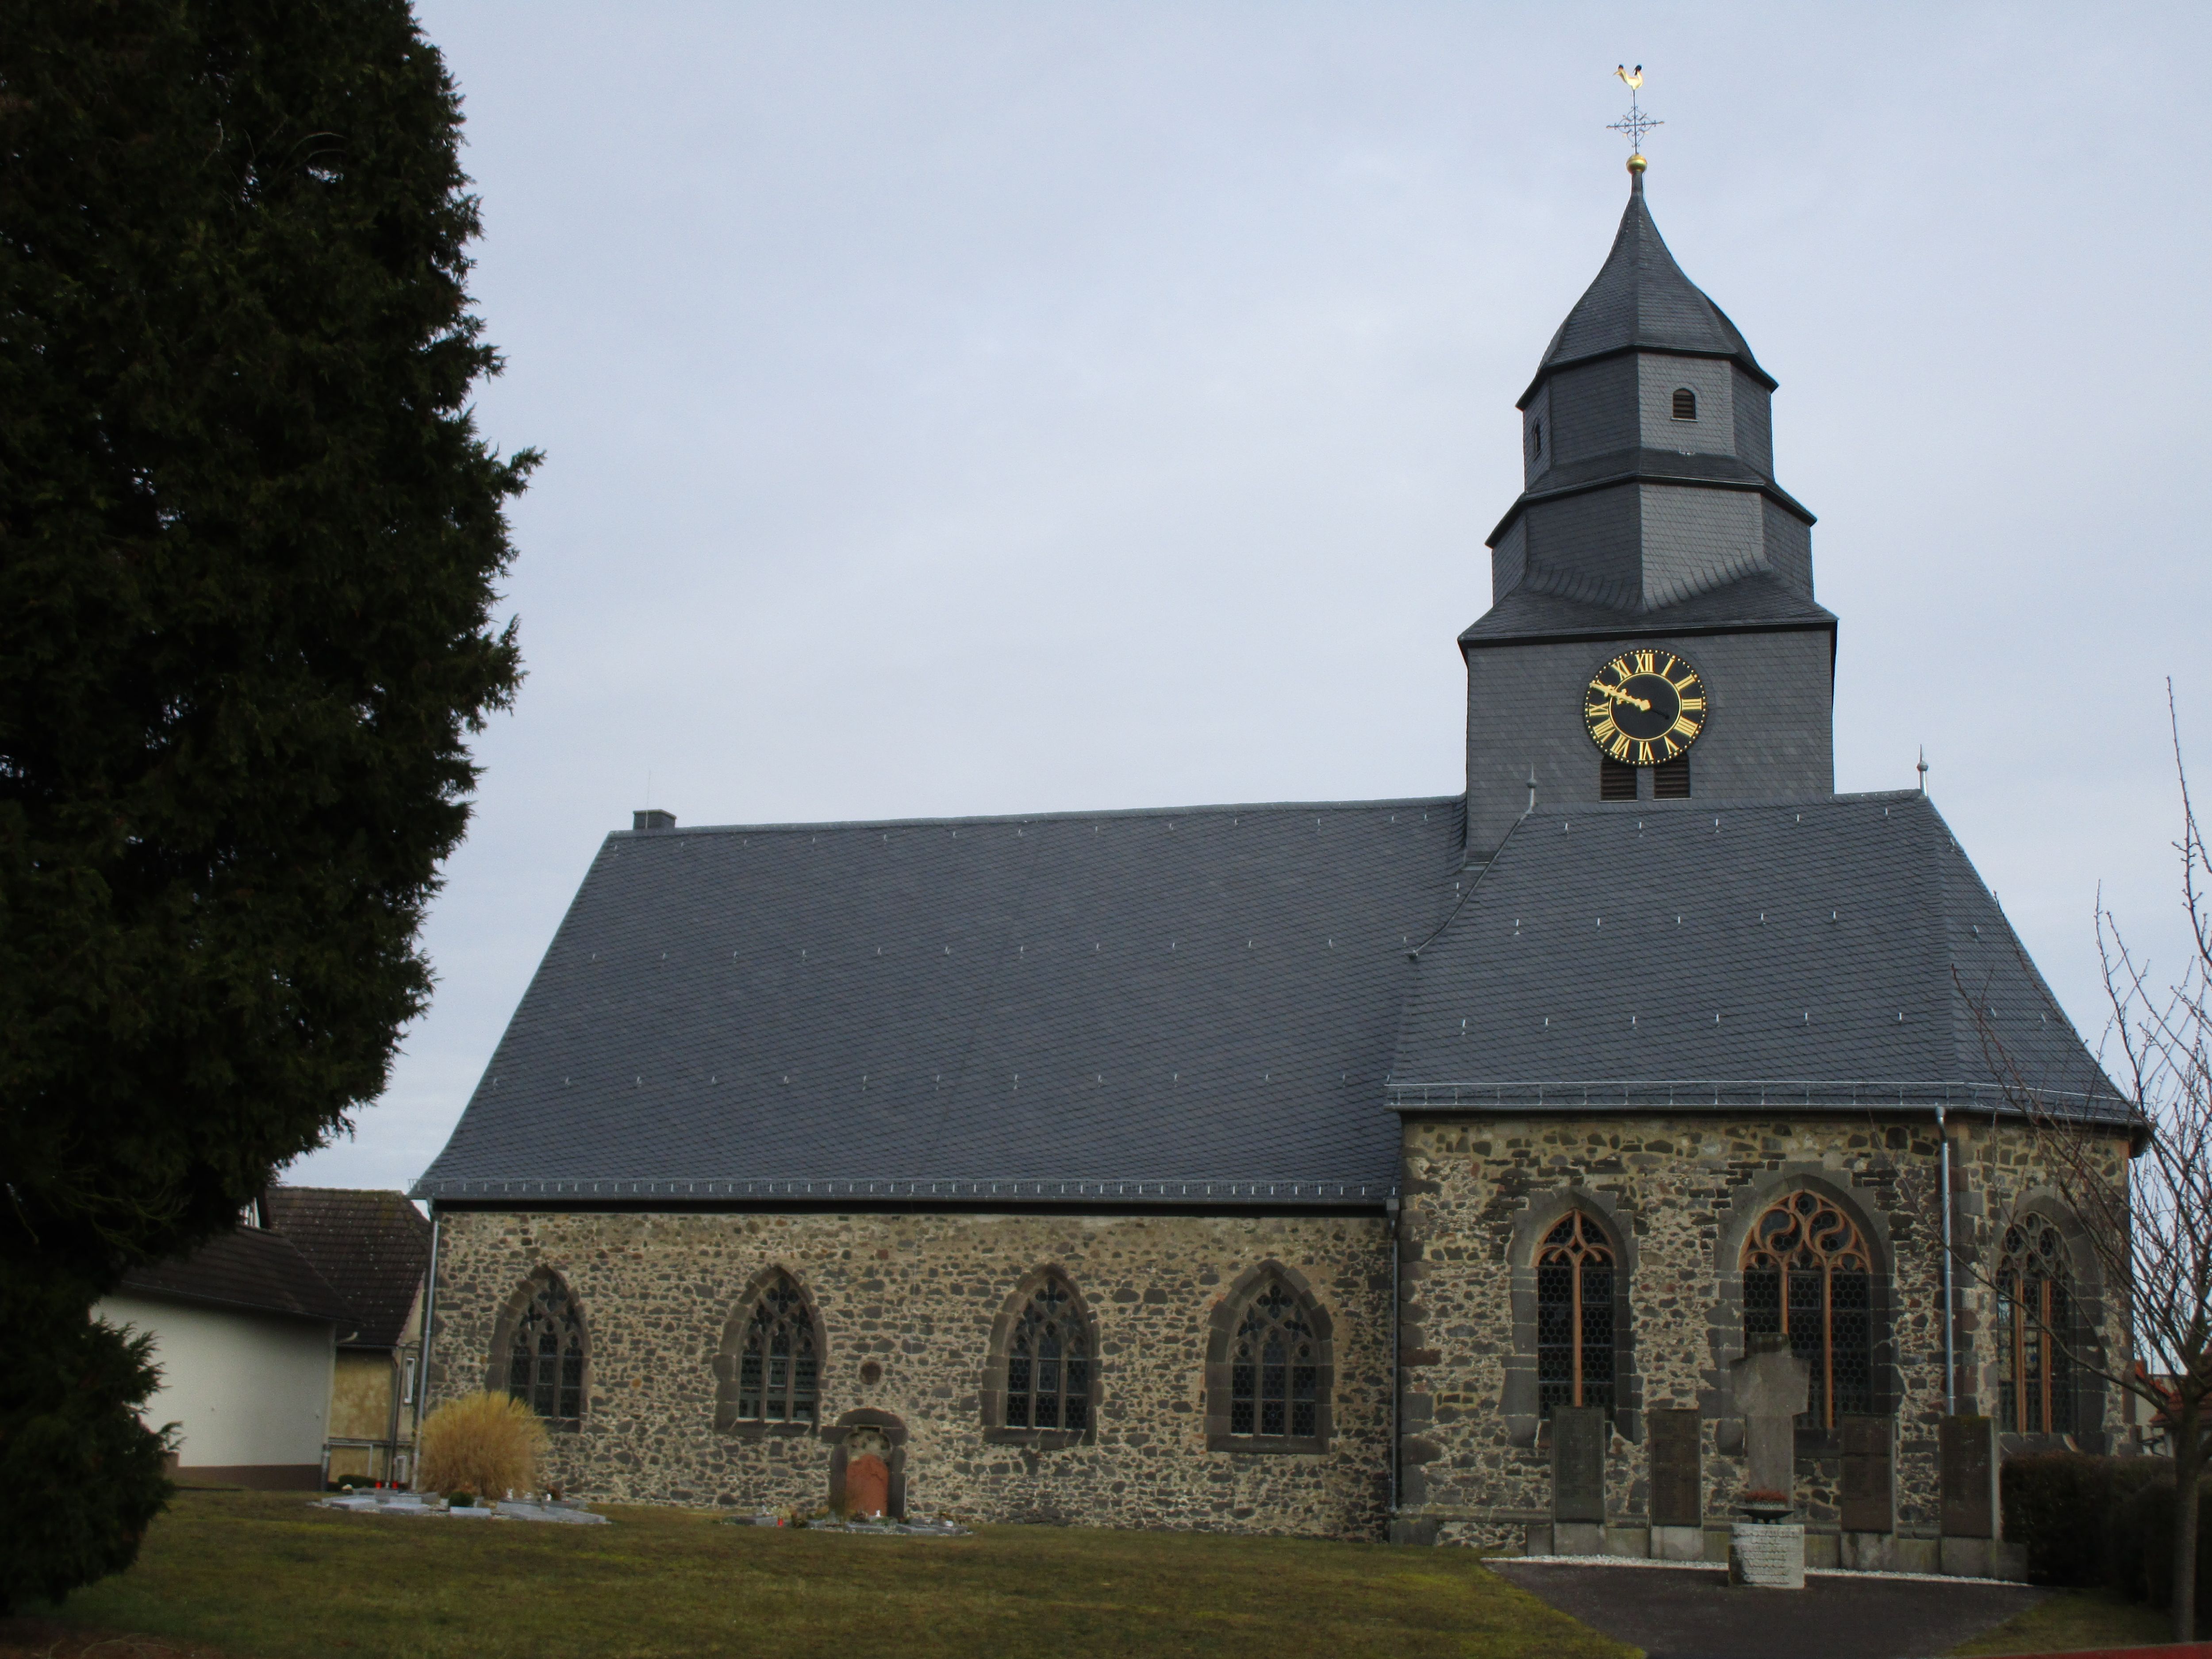 Die Evangelische Kirche in Grüningen, einem Stadtteil von Pohlheim im Landkreis Gießen, geht in ihren ältesten Teilen auf das 12. Jahrhundert zurück. Erstmals ist die Grüninger Kirche im Jahr 1151 nachgewiesen. Zu Beginn des 16. Jahrhunderts wurde das kle